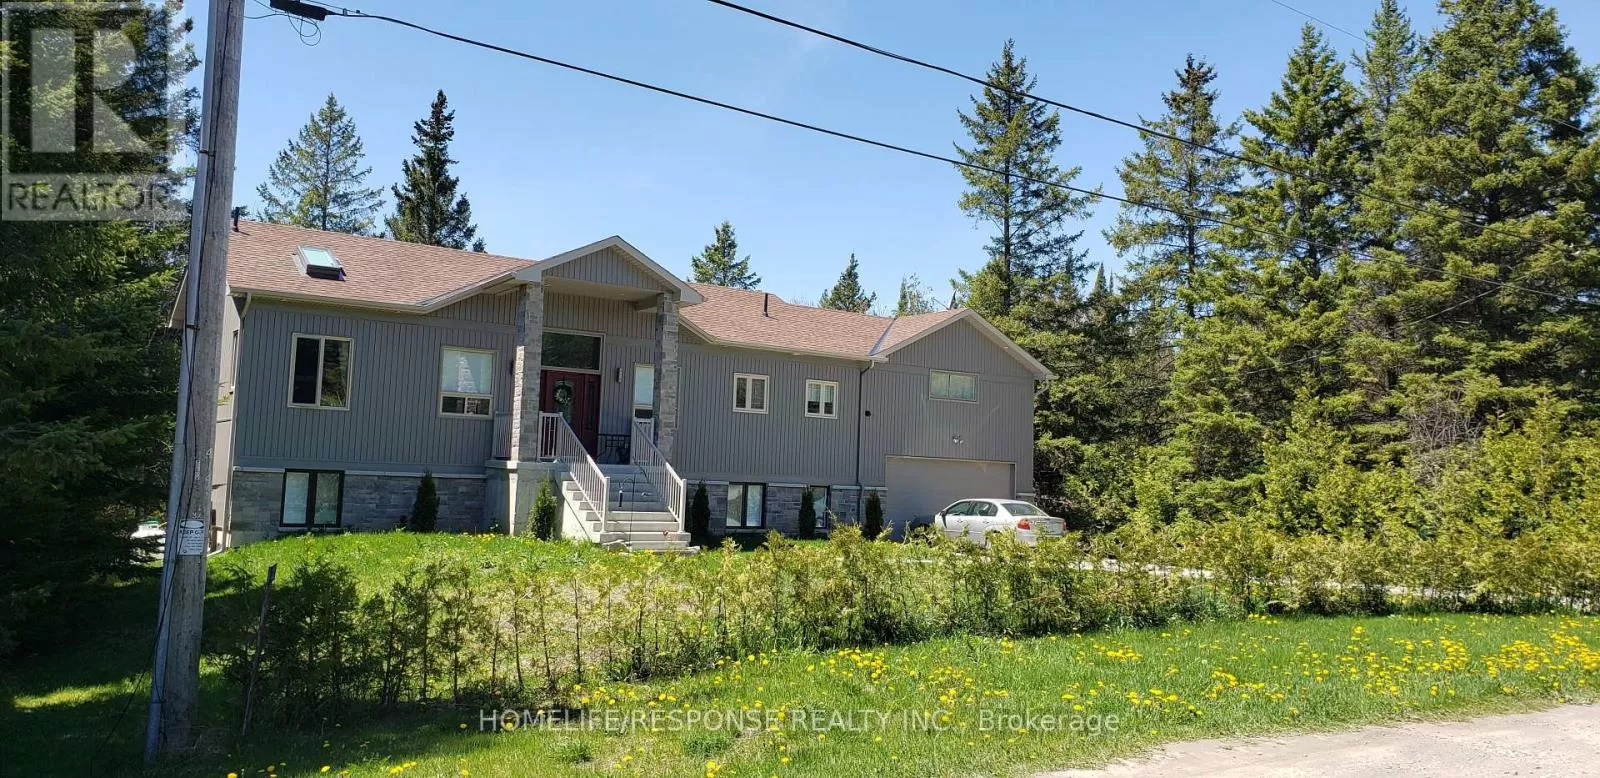 House for rent: 32 Tannenweg, Scugog, Ontario L0B 1B0